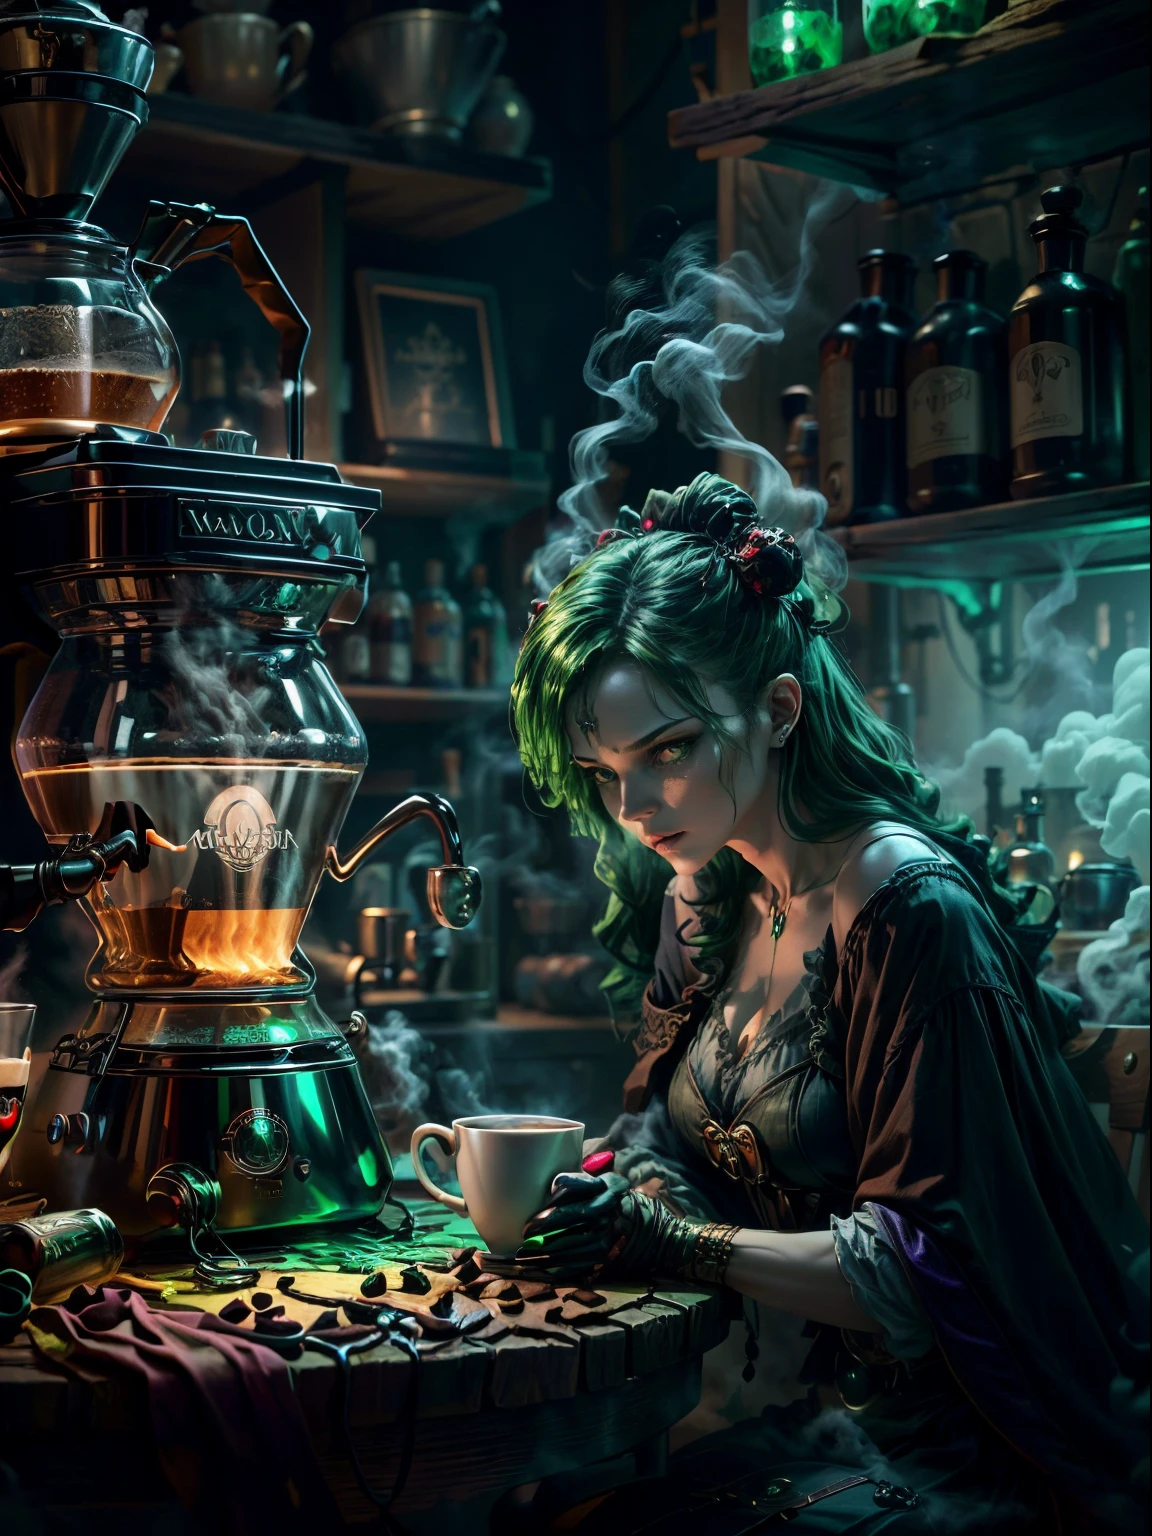 錬金術師の奇妙で魅惑的な魔女&#39;sルーム, 緑色に輝く煙が充満した湯気の立つコーヒーメーカーで錬金術の魔法をかける, 満月と窓の景色のある不気味な夜の背景, 伝統的な魔女の衣装に身を包んだ，((奇妙で不気味なコーヒーマシンには緑色の液体が詰まっている))，(超高解像度, 傑作, 正確な, 解剖学的に正しい, キメのある肌, スーパーディテール, 細部までこだわった, 高品質, 受賞歴, 最高品質, 16k)